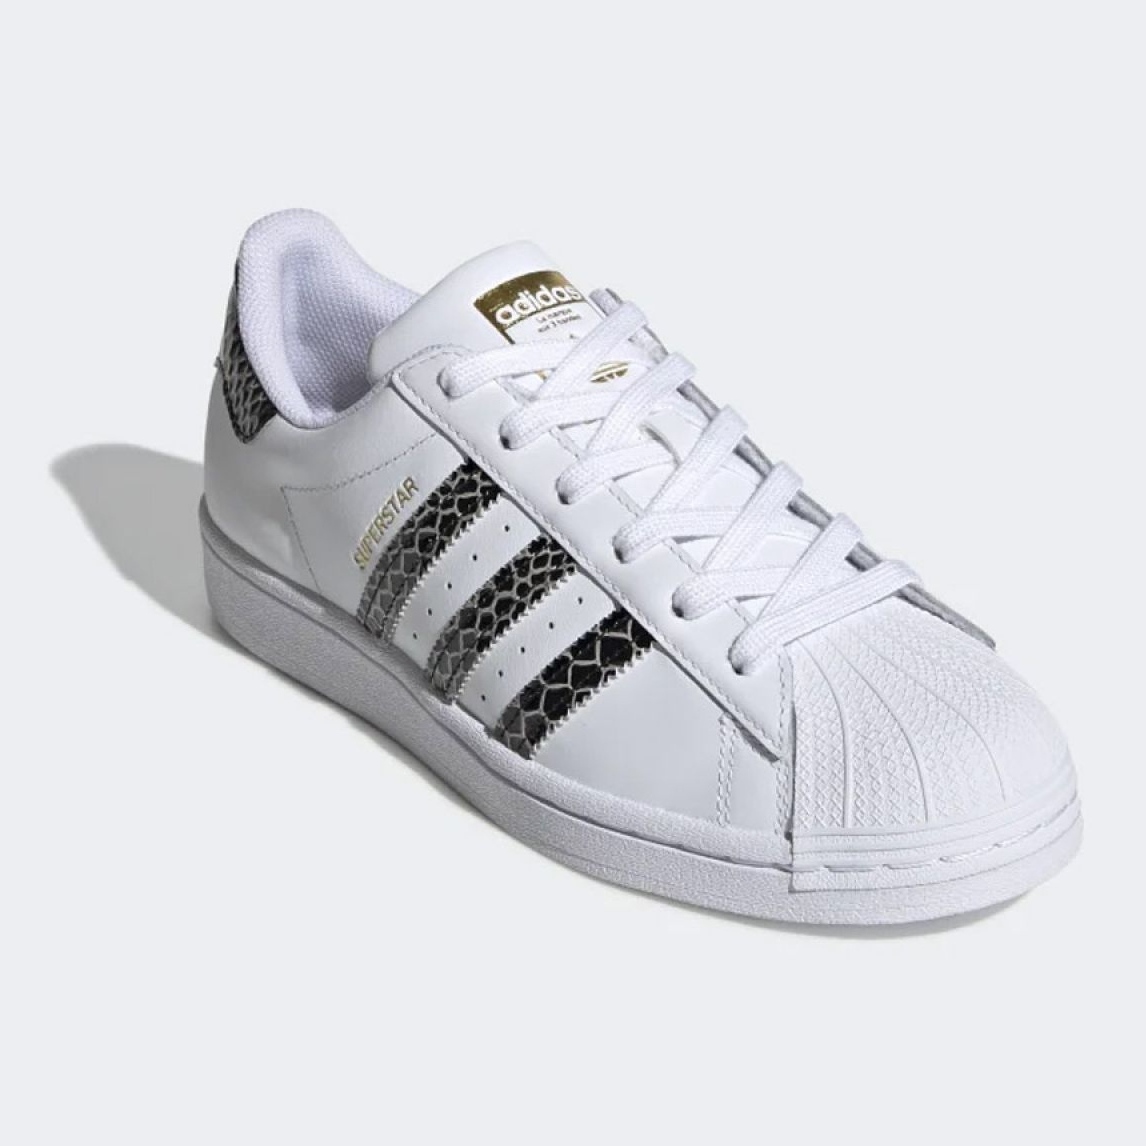 nåde Grunde Sommerhus Adidas Originals Superstar Snakeskin W FV3294 shoes white - KeeShoes